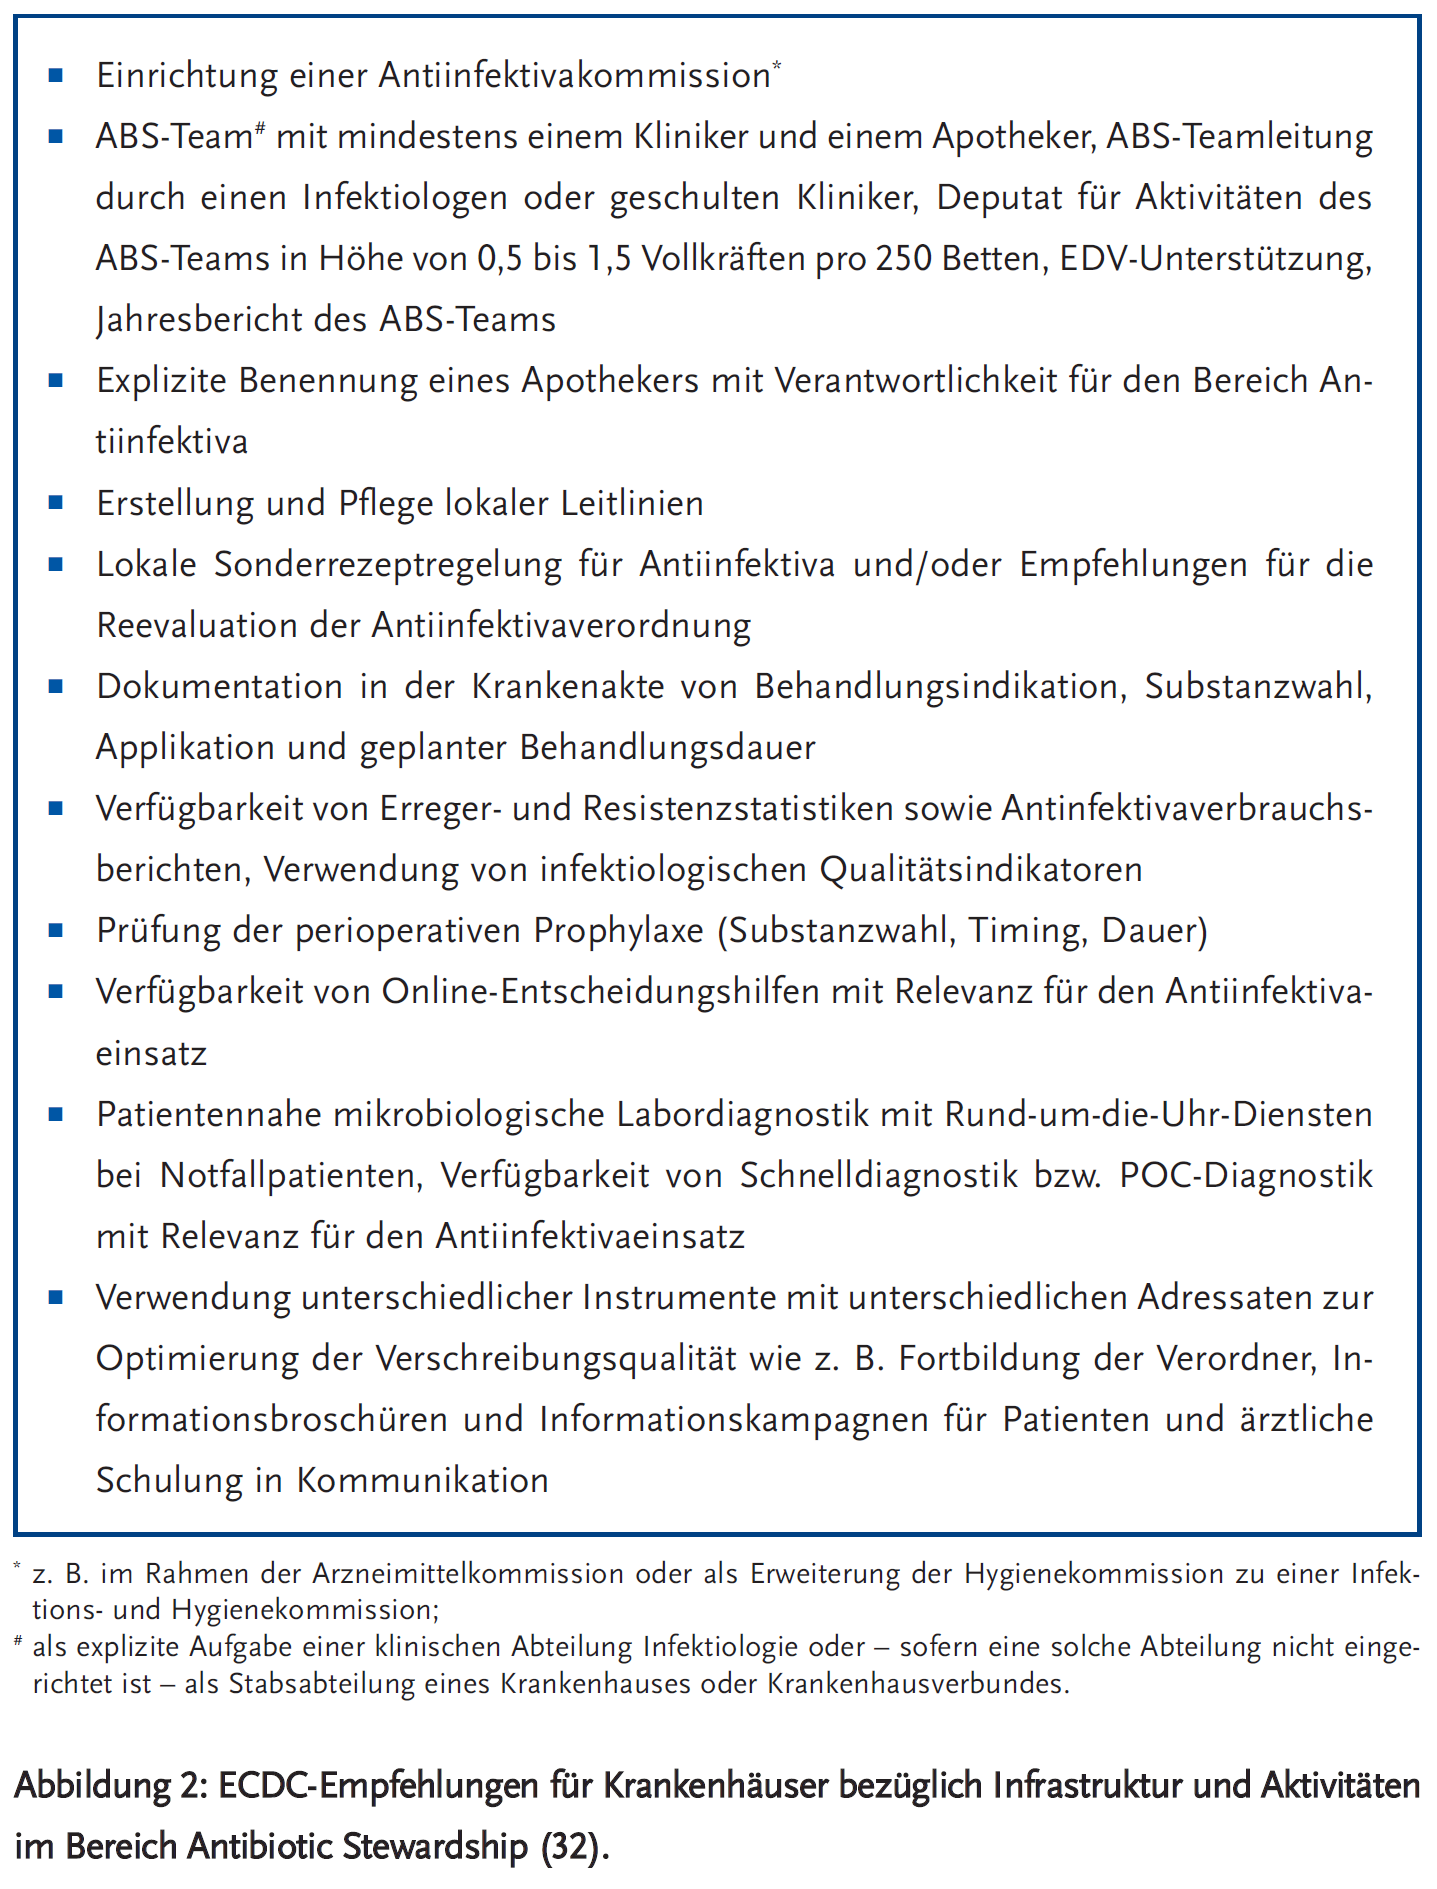 Abbildung 2: ECDC-Empfehlungen für Krankenhäuser bezüglich Infrastruktur und Aktivitätenim Bereich Antibiotic Stewardship.